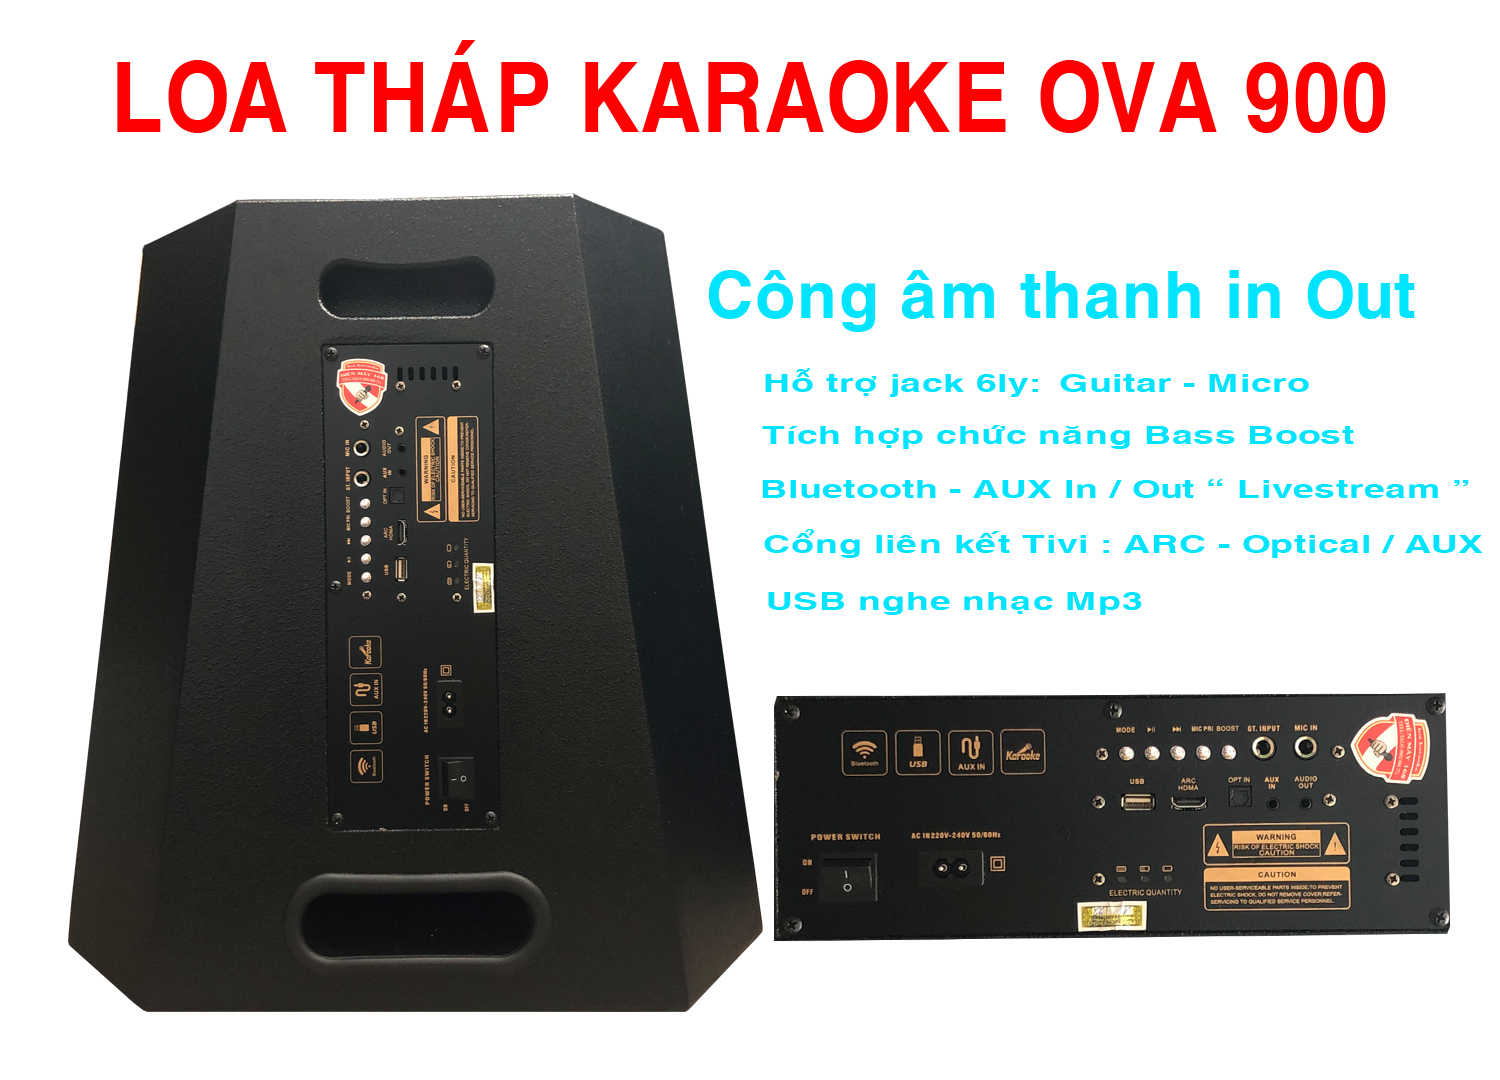 Loa tháp karaoke OVA 900 hát hay năm 2023